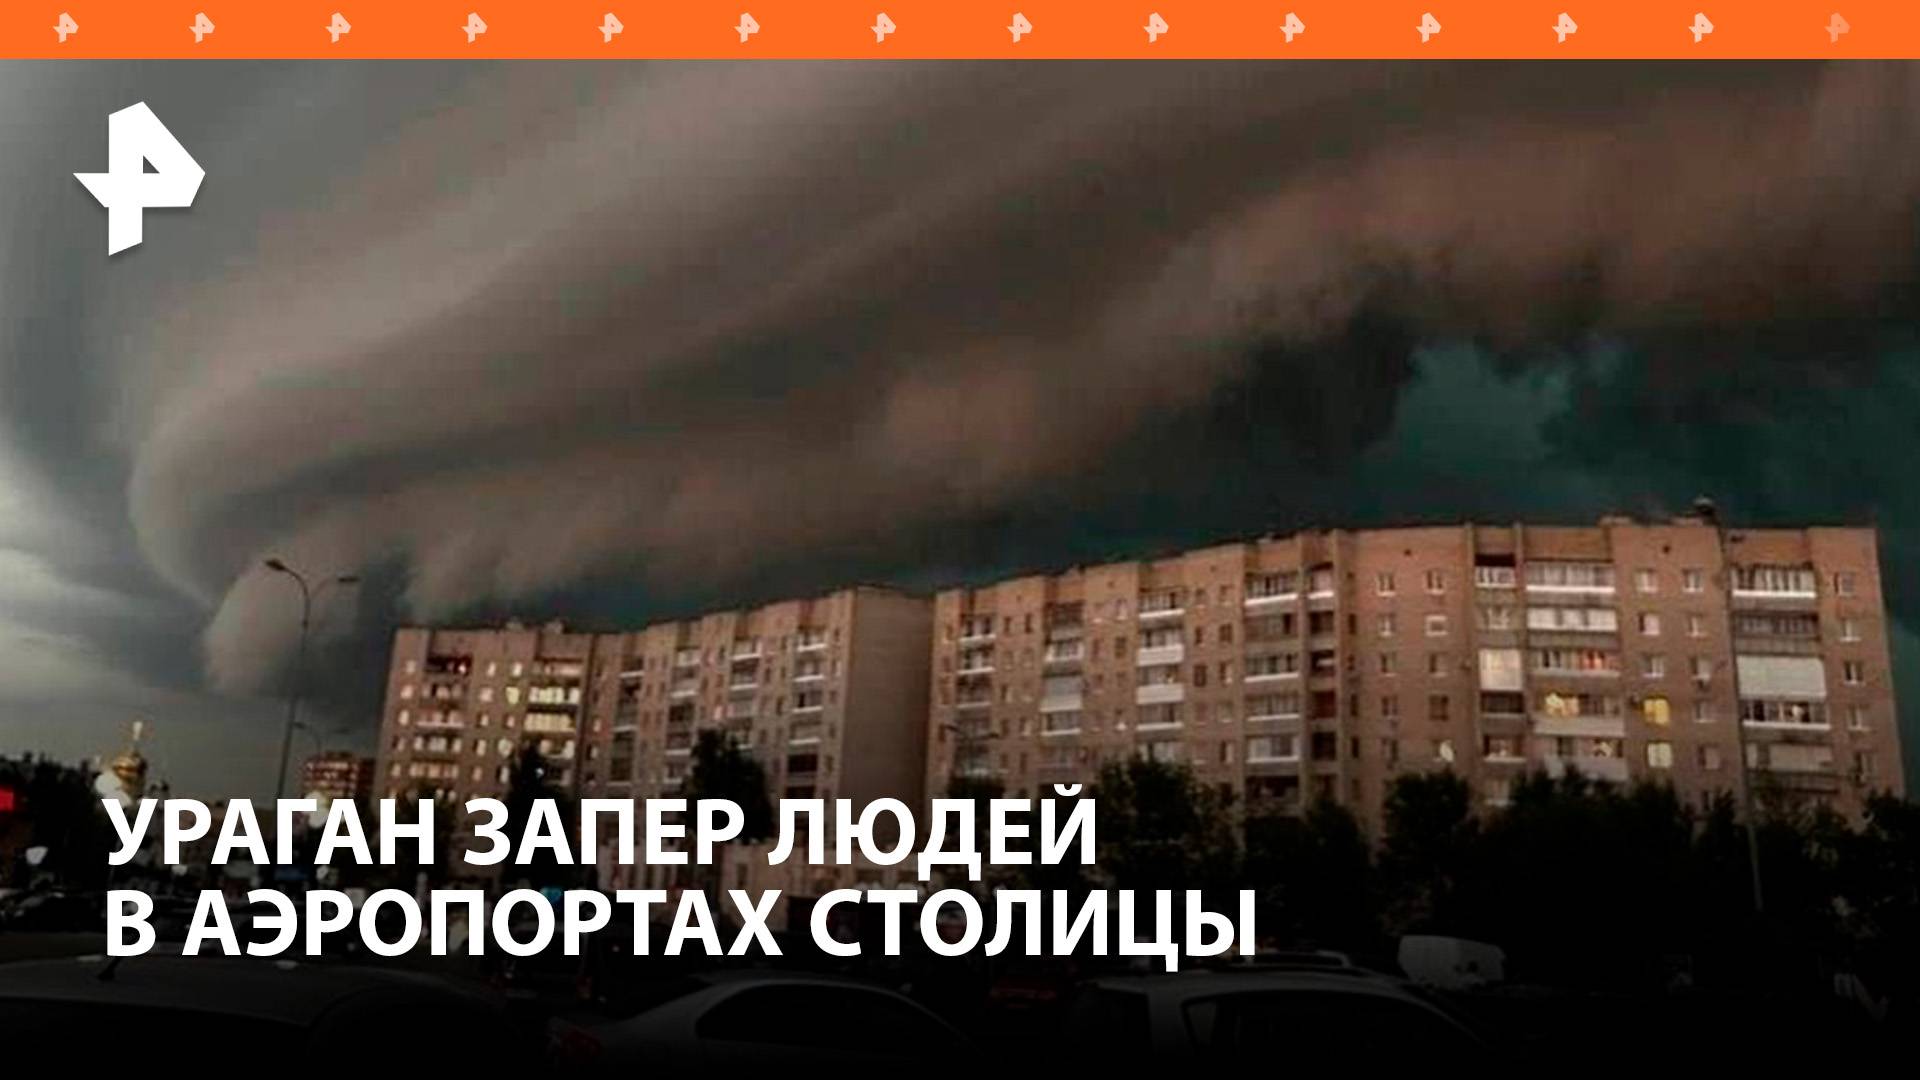 Сотни пассажиров московских аэропортов стали заложниками урагана в Москве / РЕН Новости